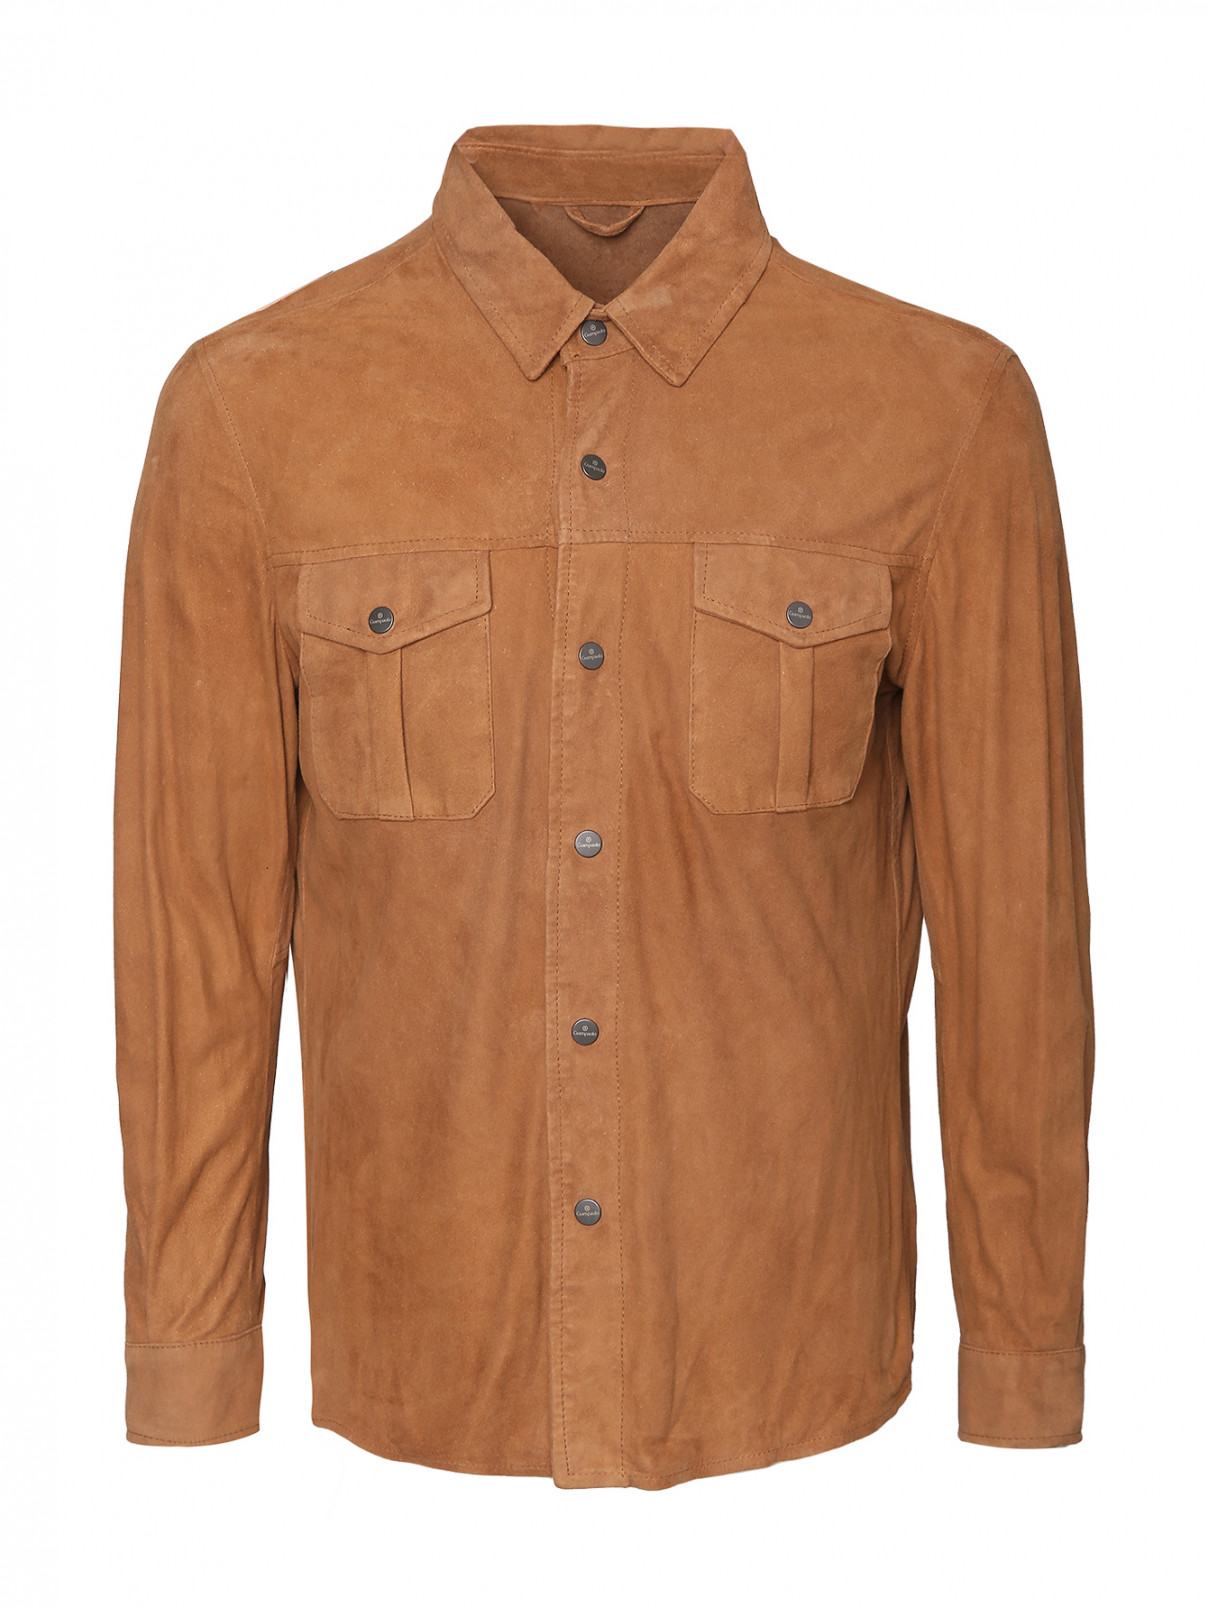 Куртка-рубашка из замши с накладными карманами Giampaolo  –  Общий вид  – Цвет:  Коричневый